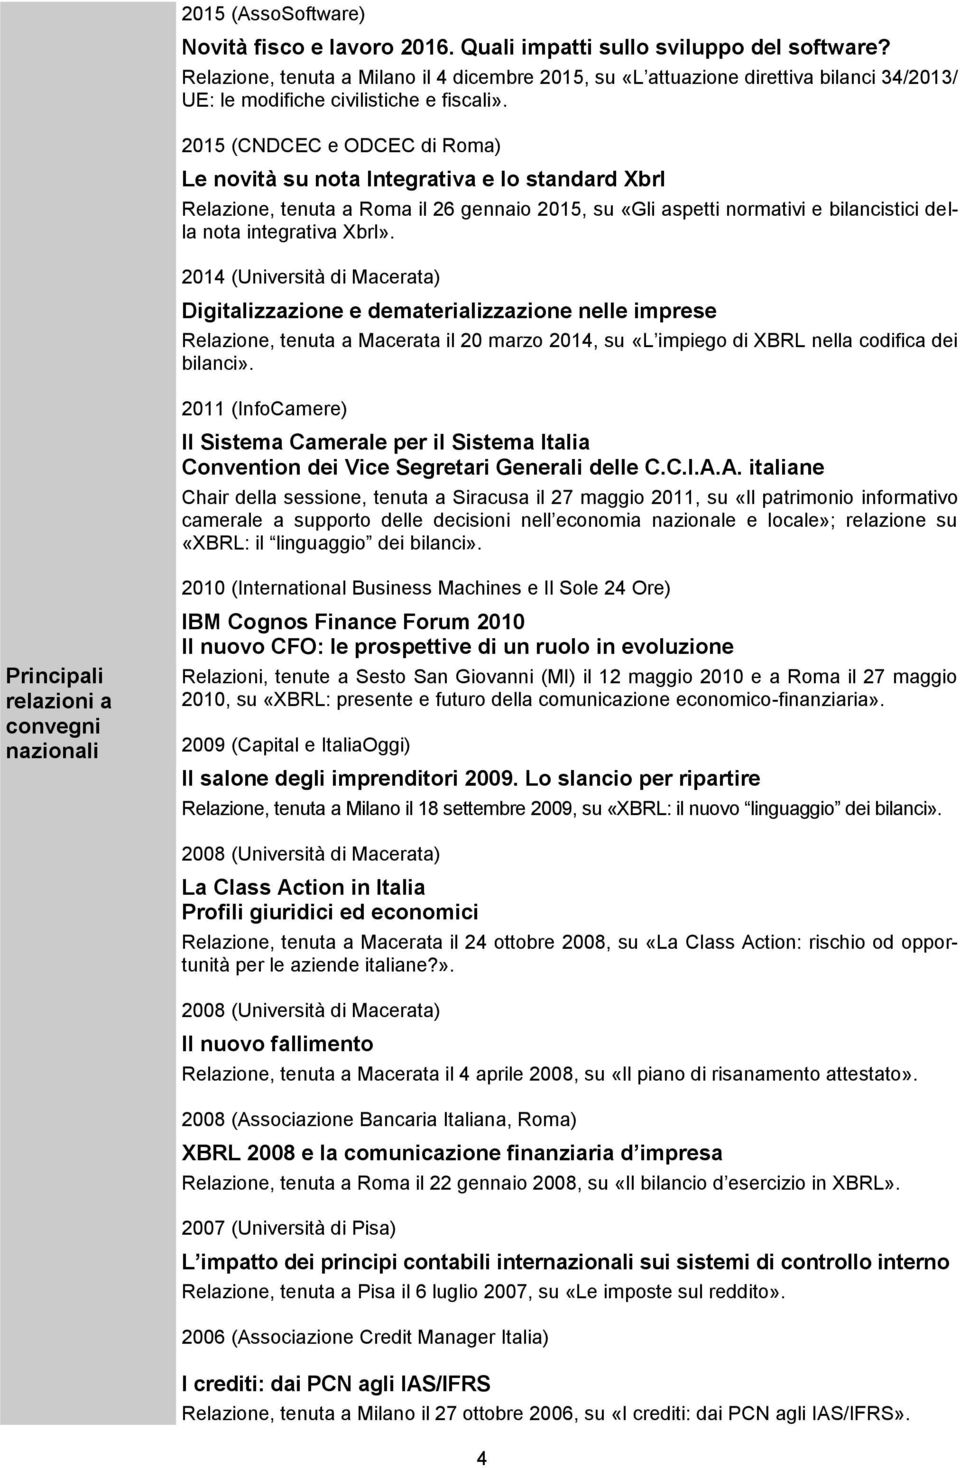 2015 (CNDCEC e ODCEC di Roma) Le novità su nota Integrativa e lo standard Xbrl Relazione, tenuta a Roma il 26 gennaio 2015, su «Gli aspetti normativi e bilancistici della nota integrativa Xbrl».